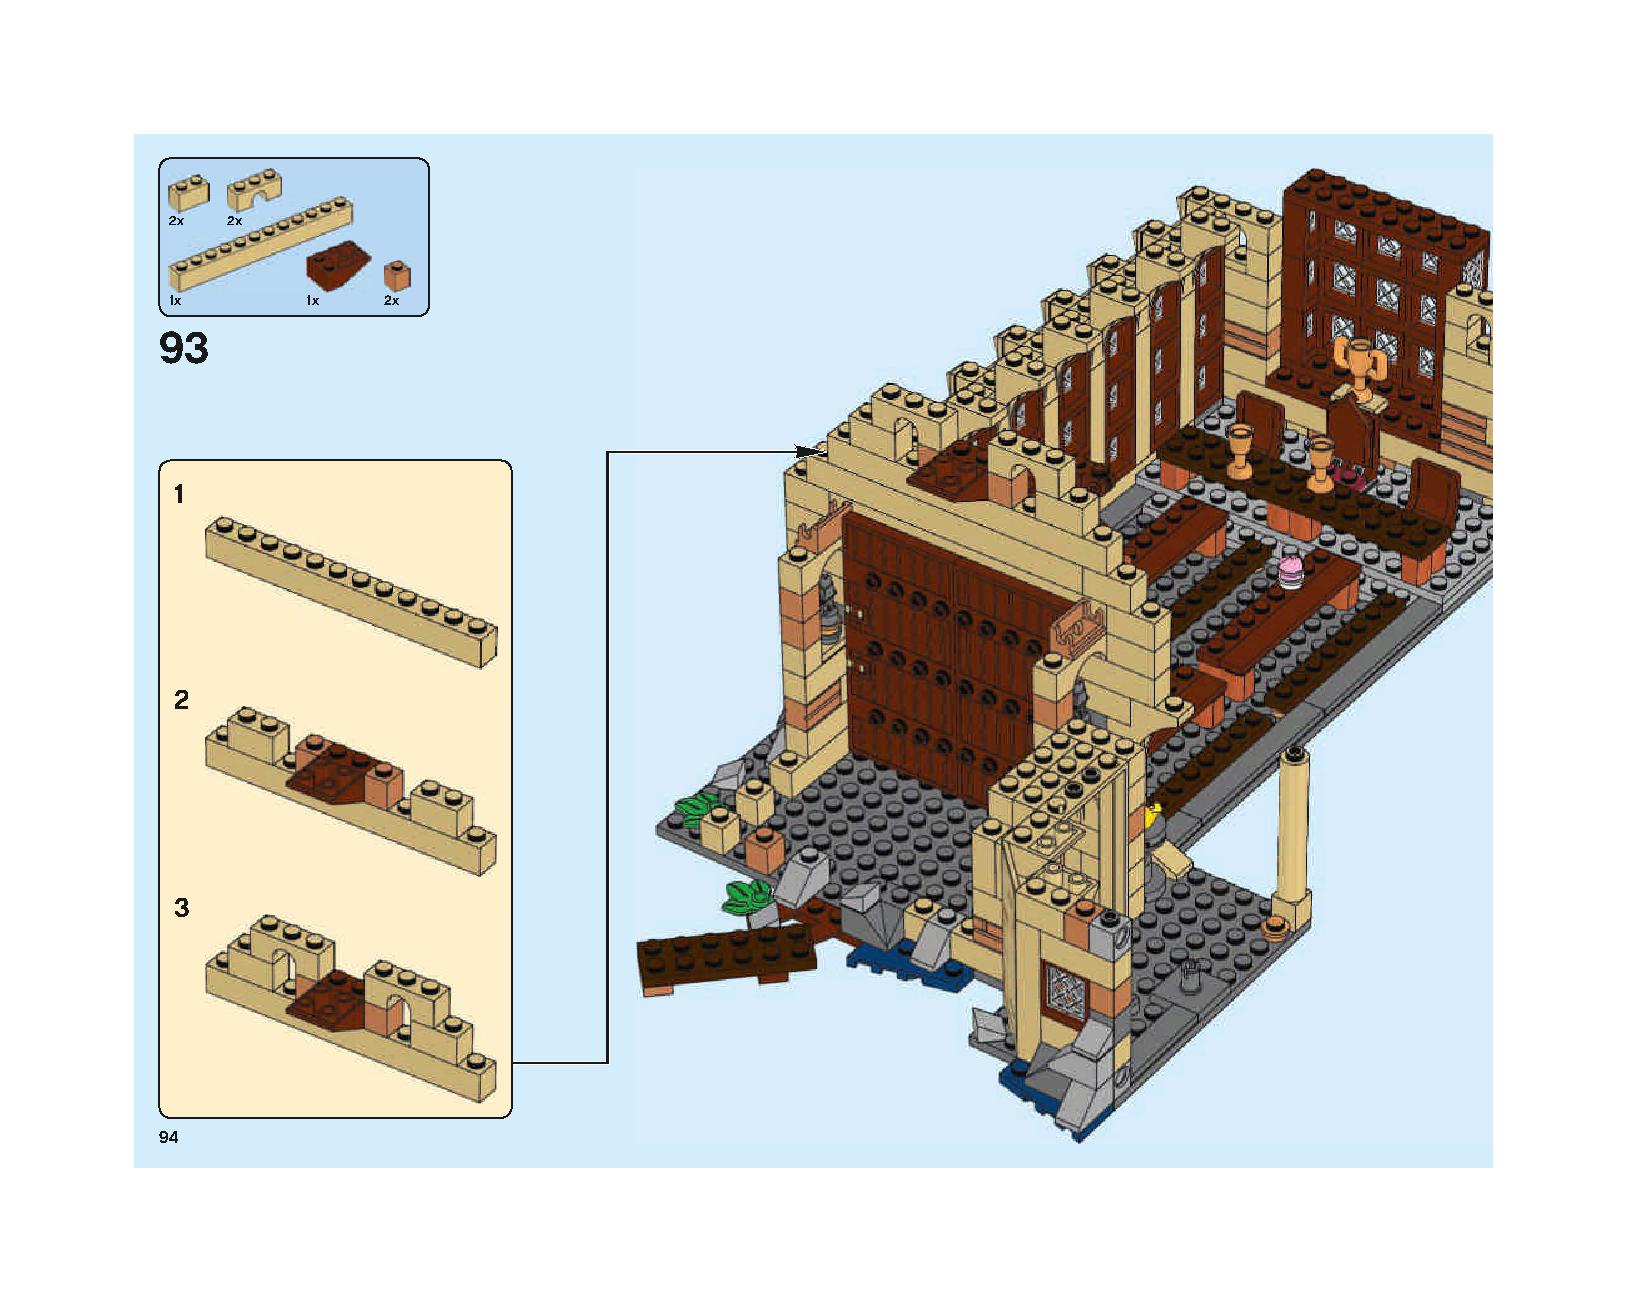 ホグワーツの大広間 75954 レゴの商品情報 レゴの説明書・組立方法 94 page